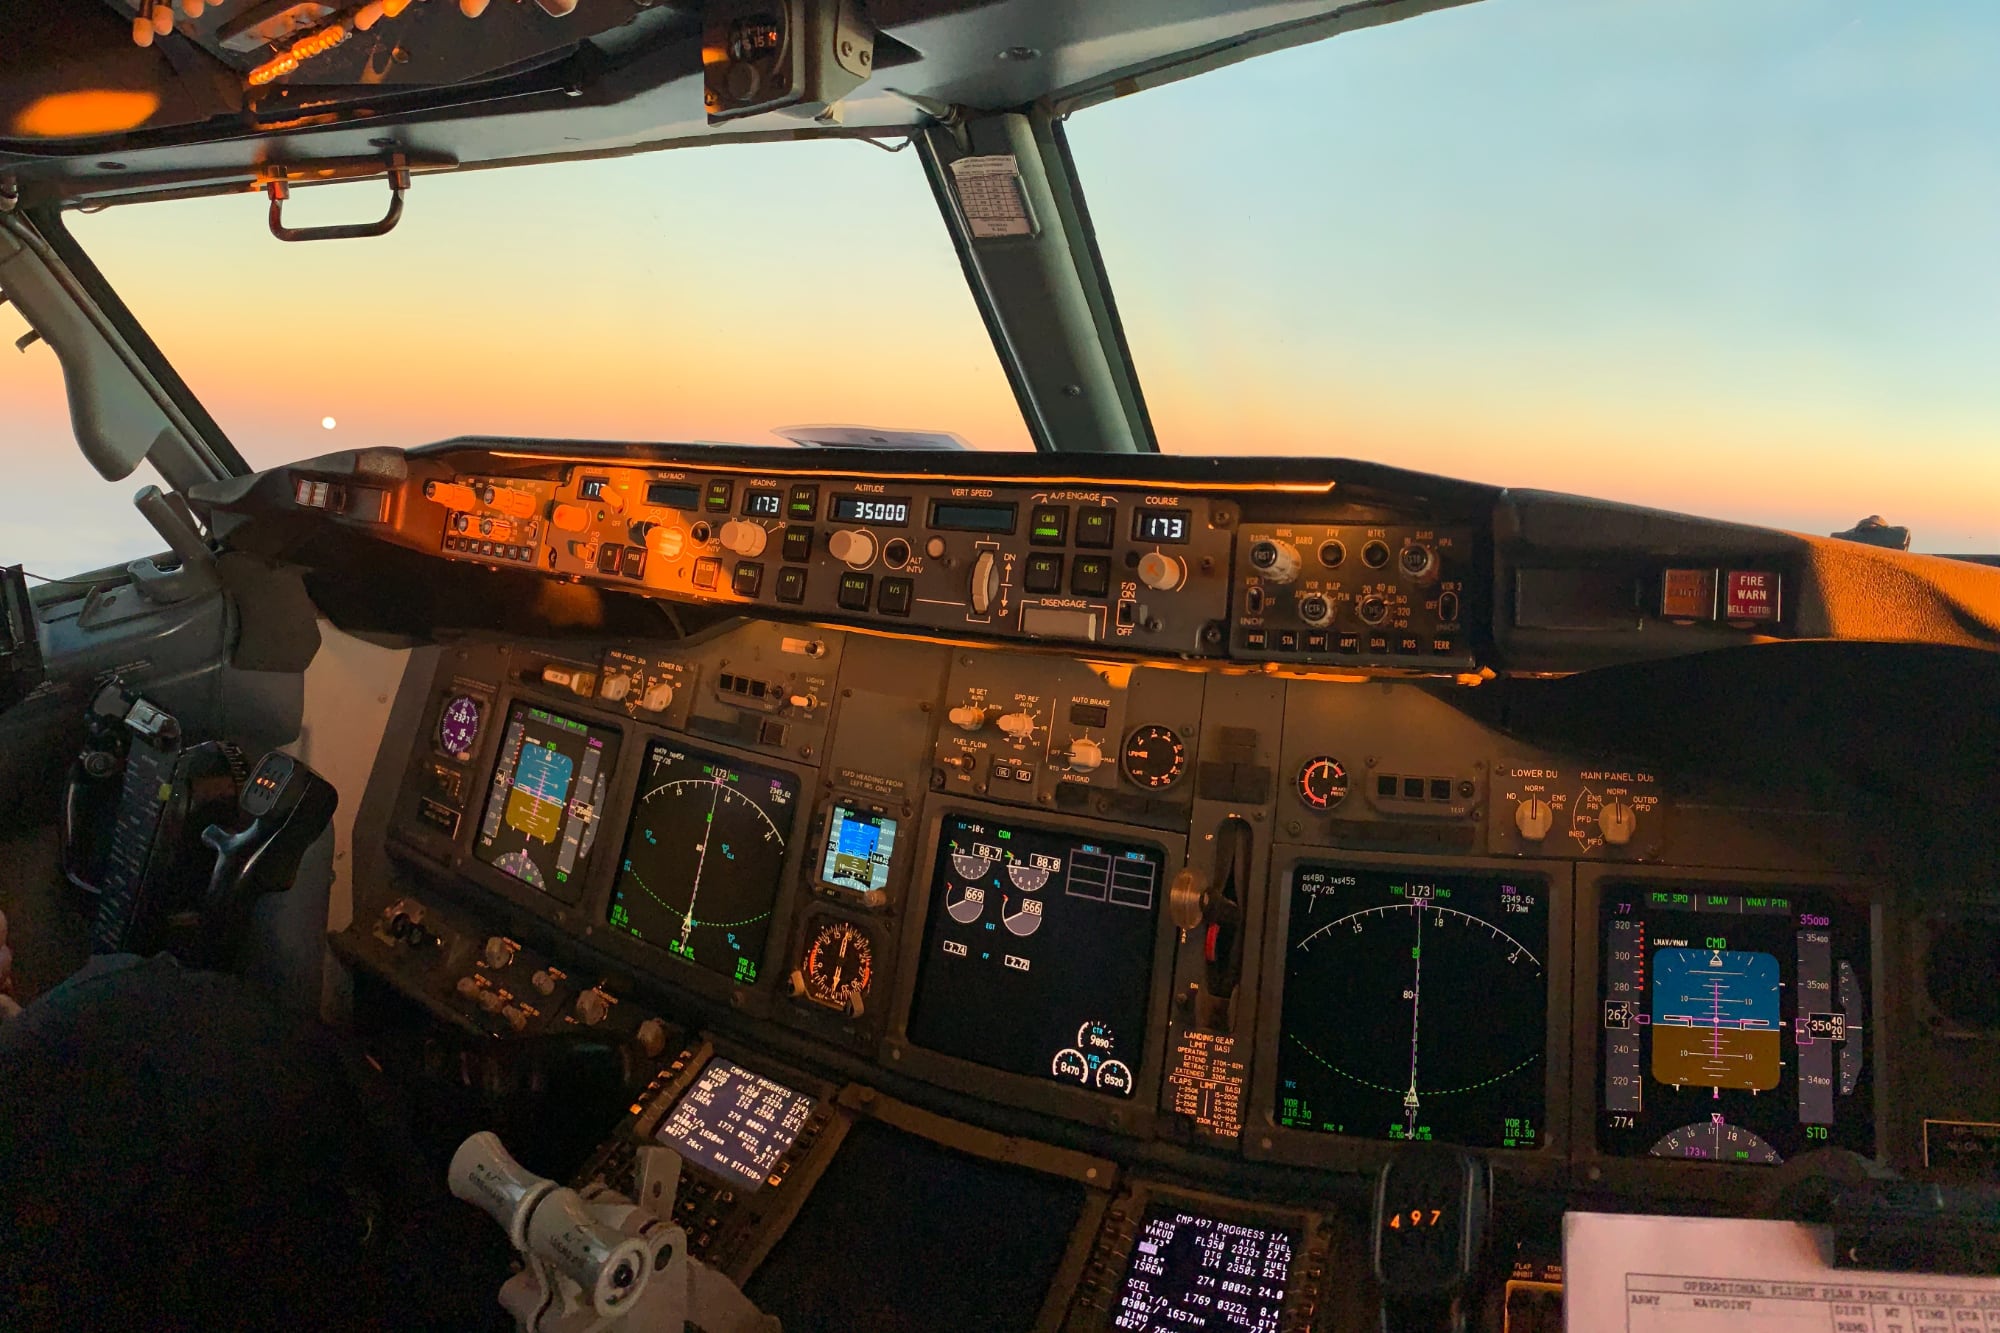 Cabina de avión de pasajeros con paneles de instrumentos digitales.